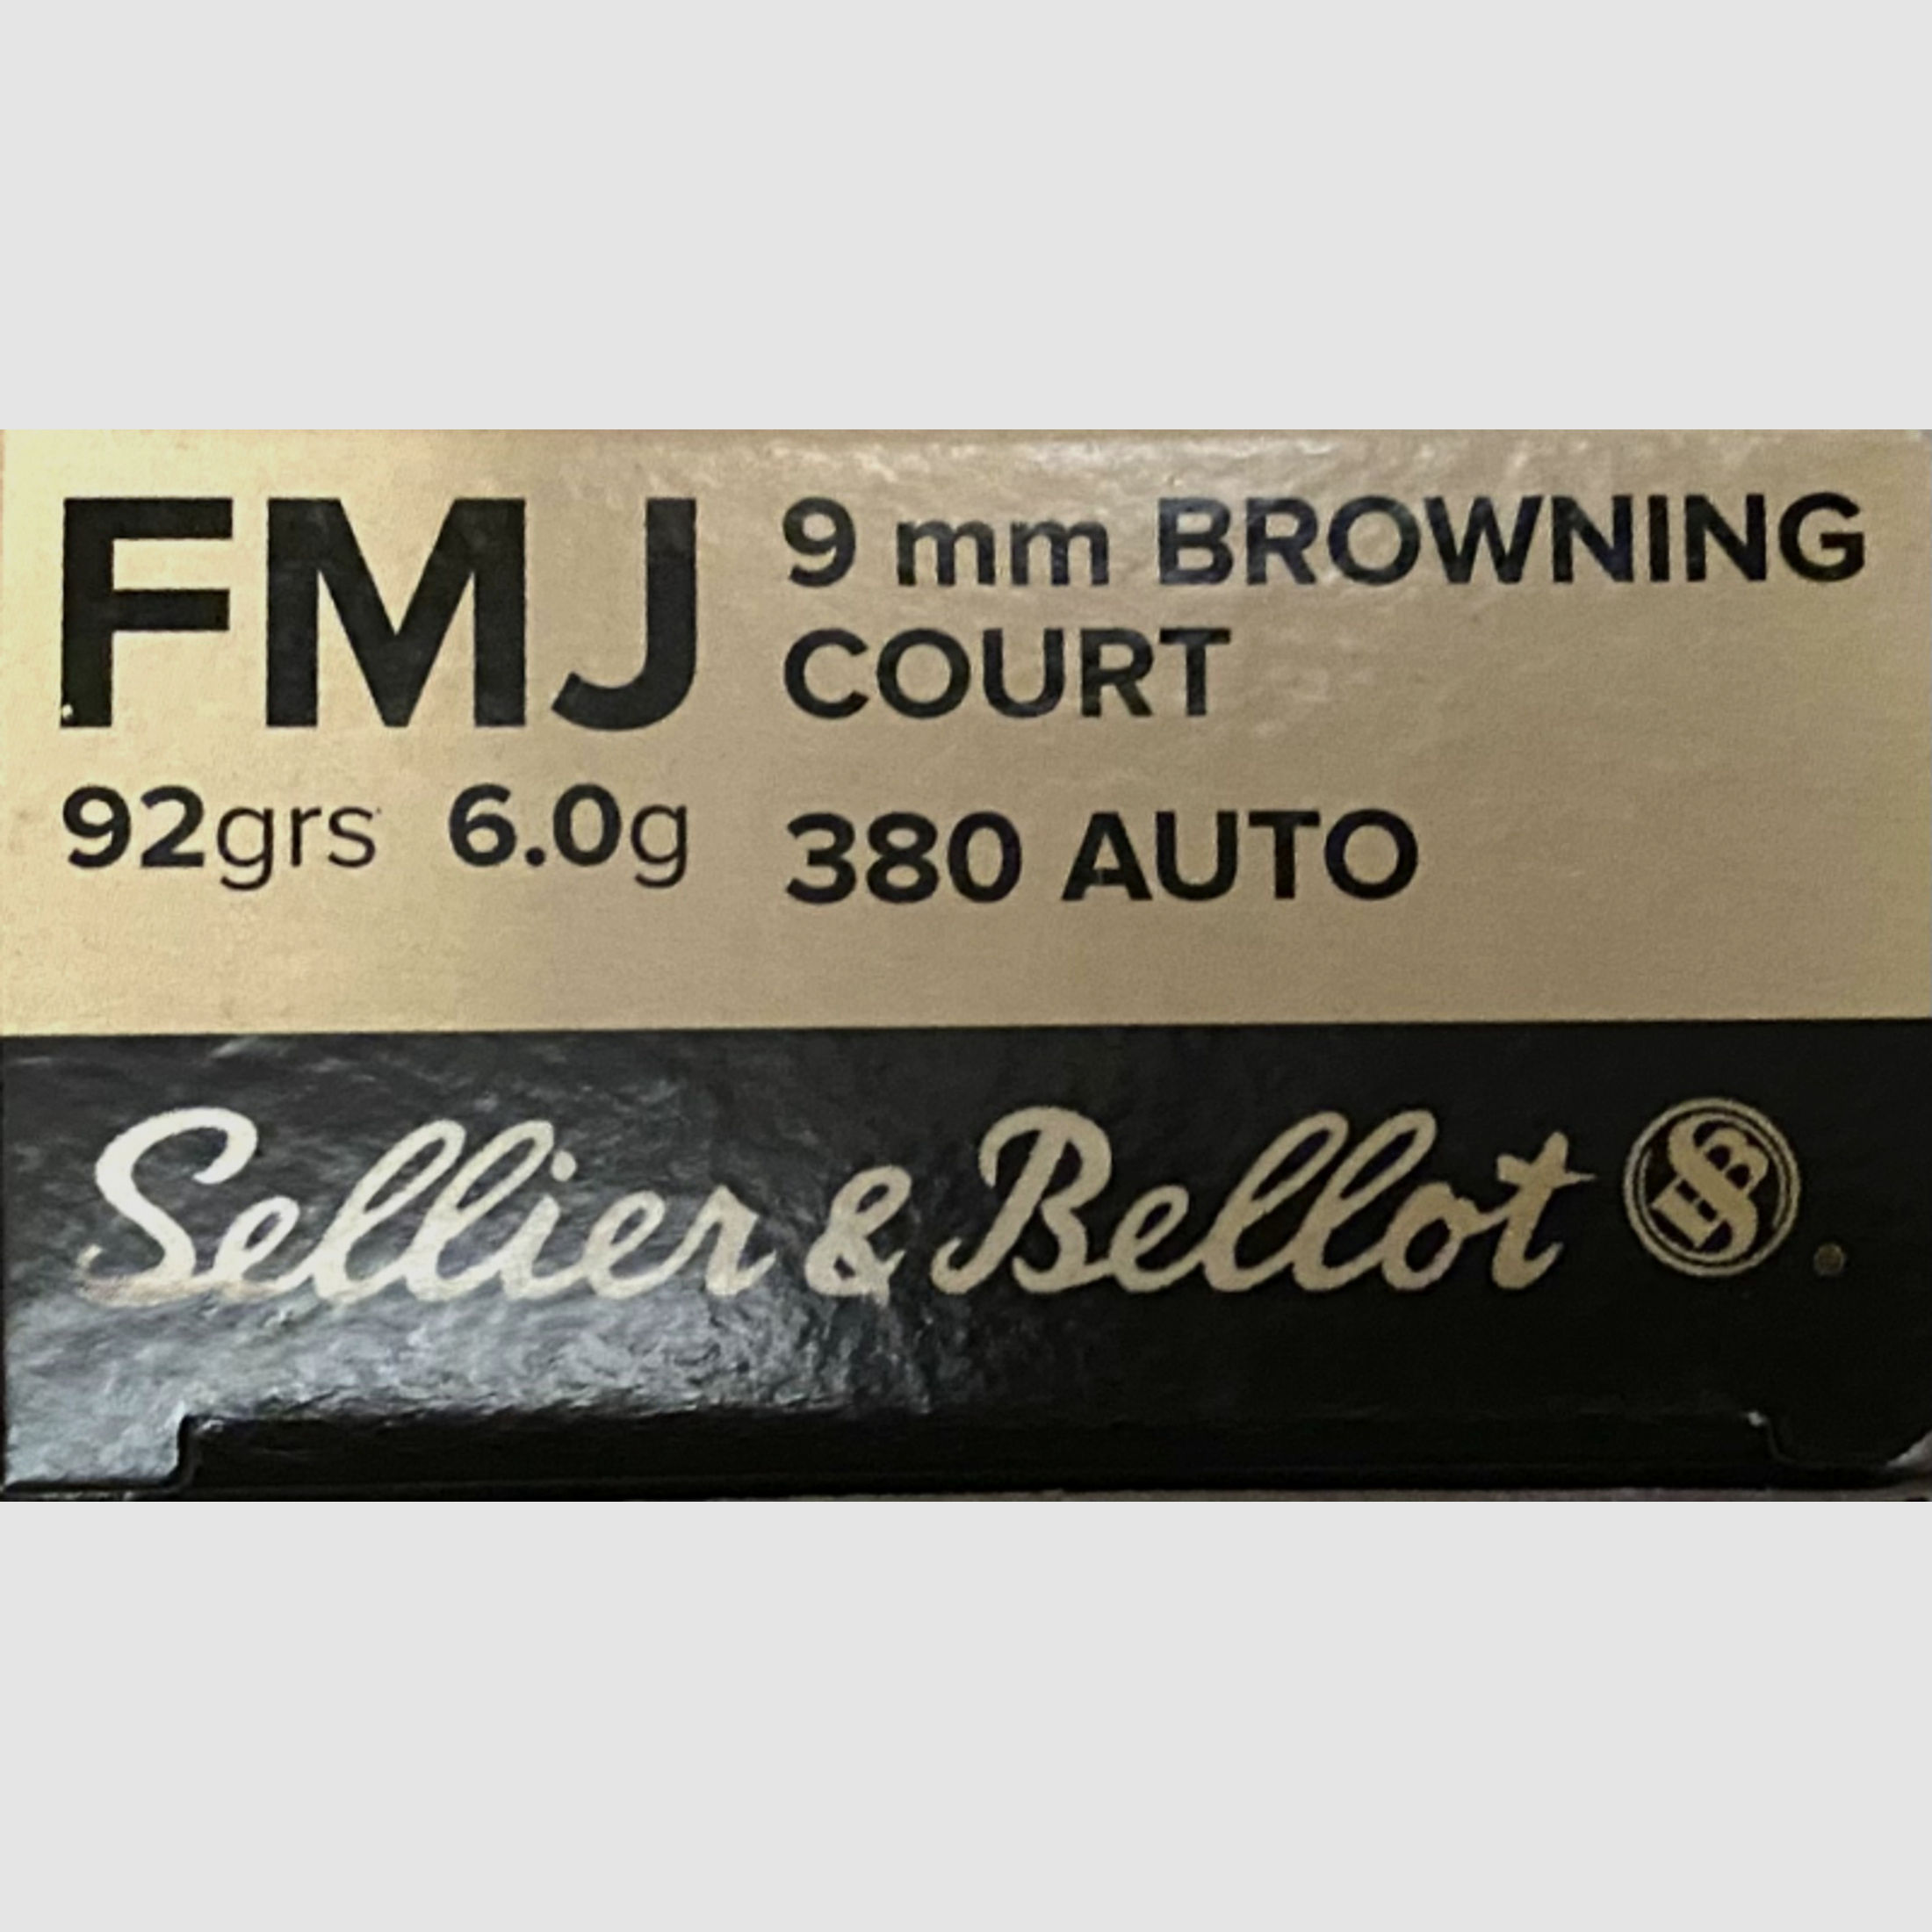 Sellier & Bellot 9mmBrowning (380Auto) Kurz VM 92grs. Patronen, 5 x 50er Packung